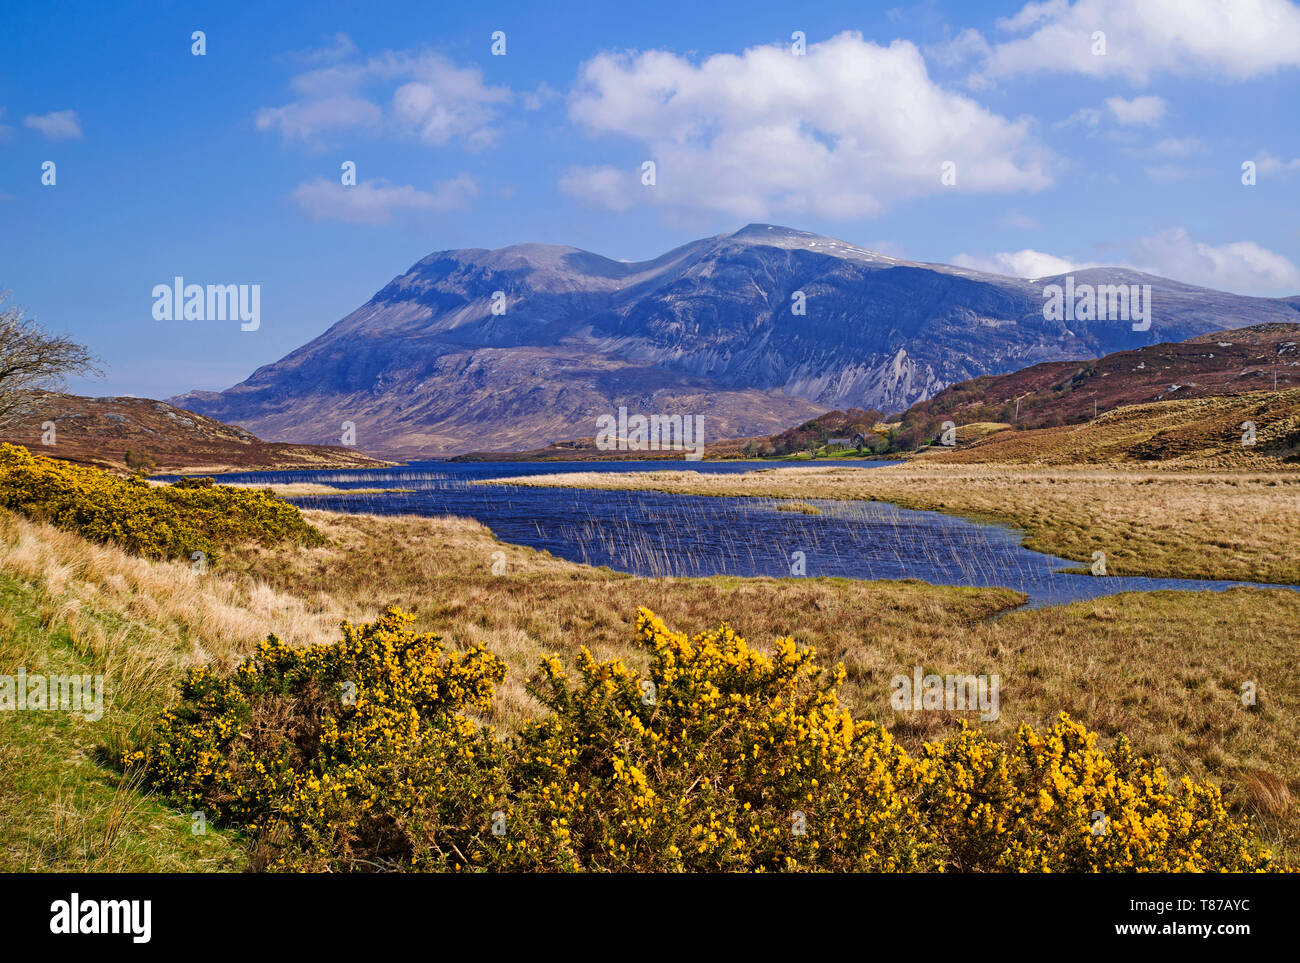 Arkle über Loch Stack, Sutherland, Scottish Highlands Großbritannien gesehen, sonnigen Frühling Morgen, blühenden Ginster Büsche im Vordergrund, Stockfoto